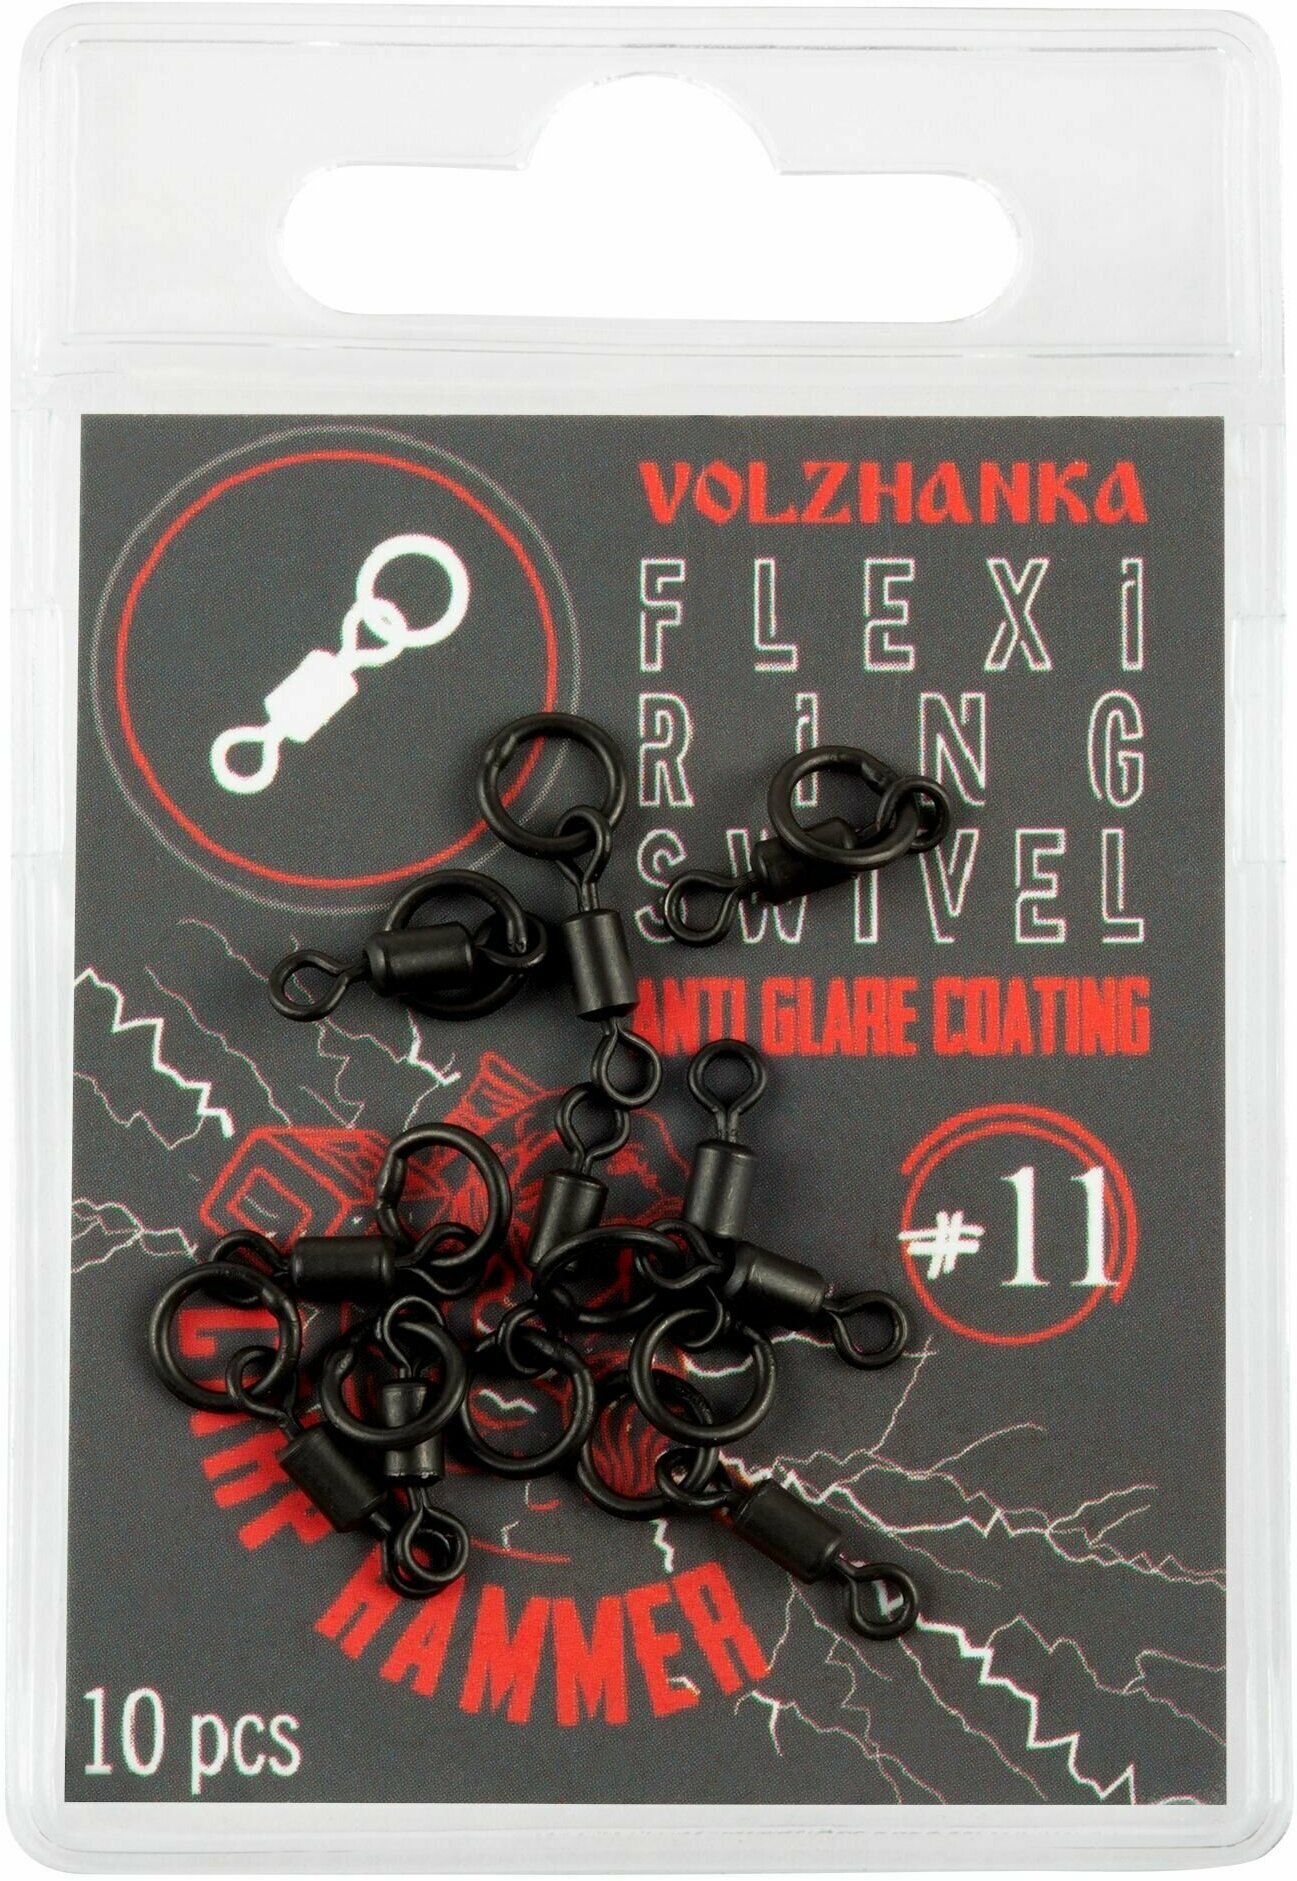 Волжанка карповый Вертлюг с кольцом "Volzhanka Flexi Ring Swivel" # 11 (10шт/уп)